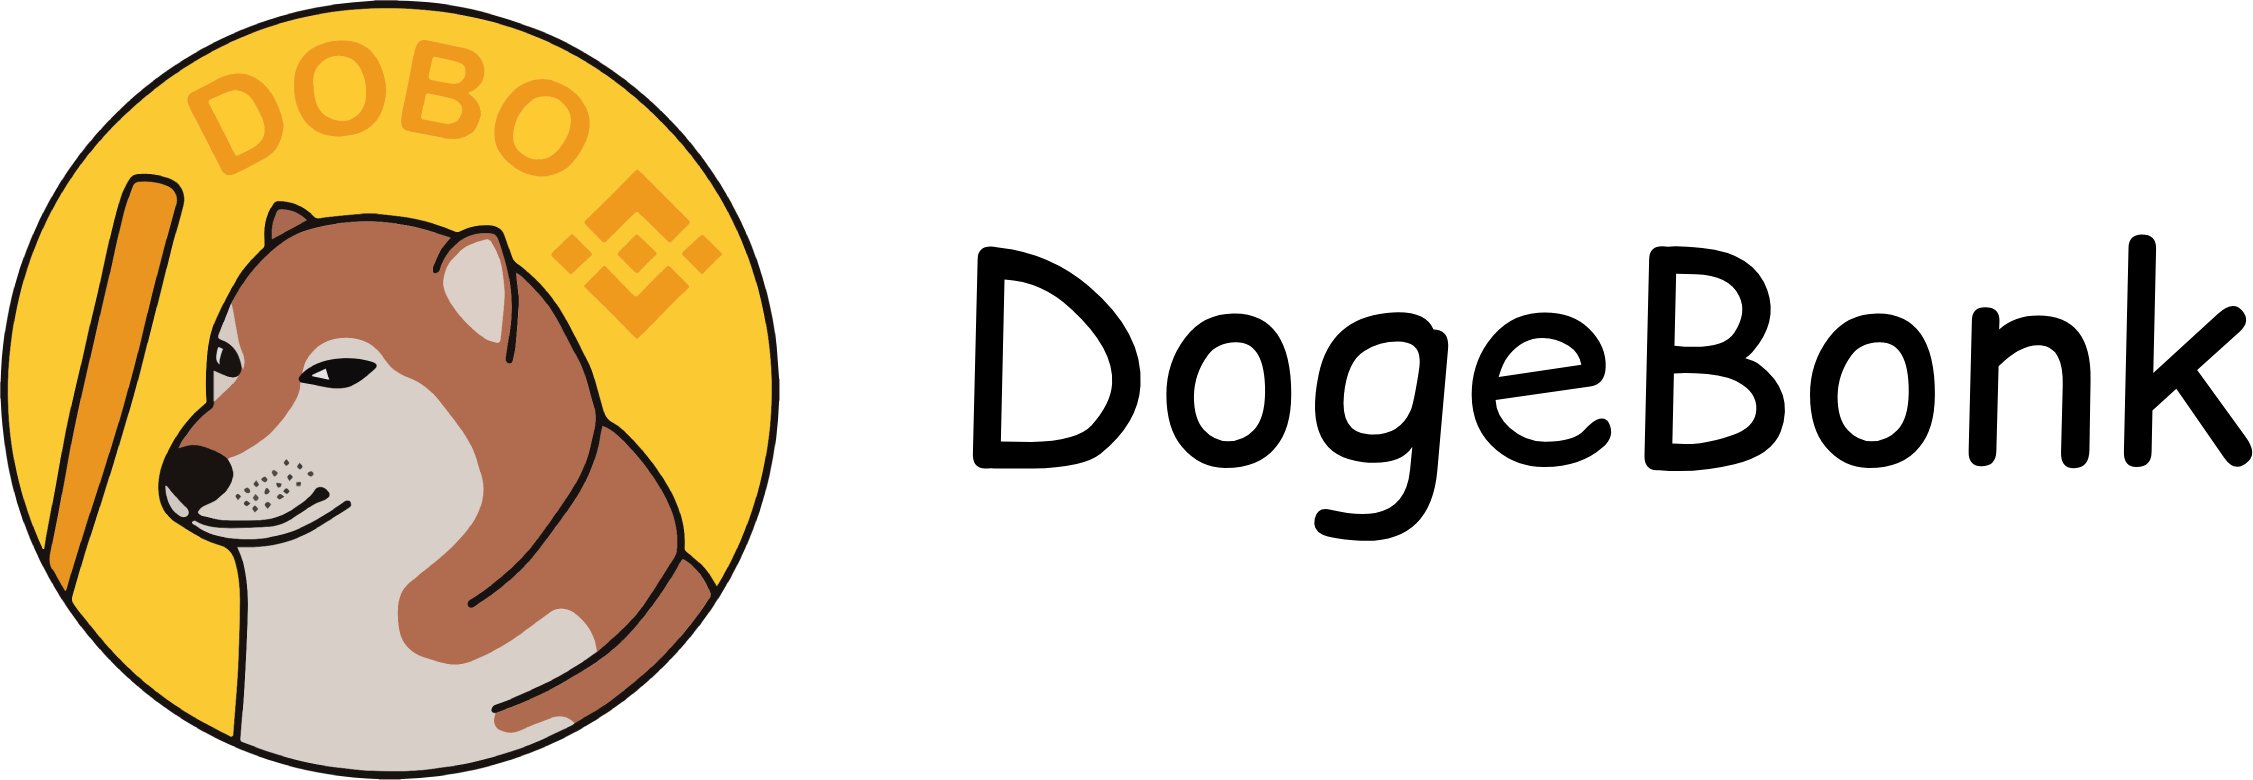 DogeBonk logo transparent black